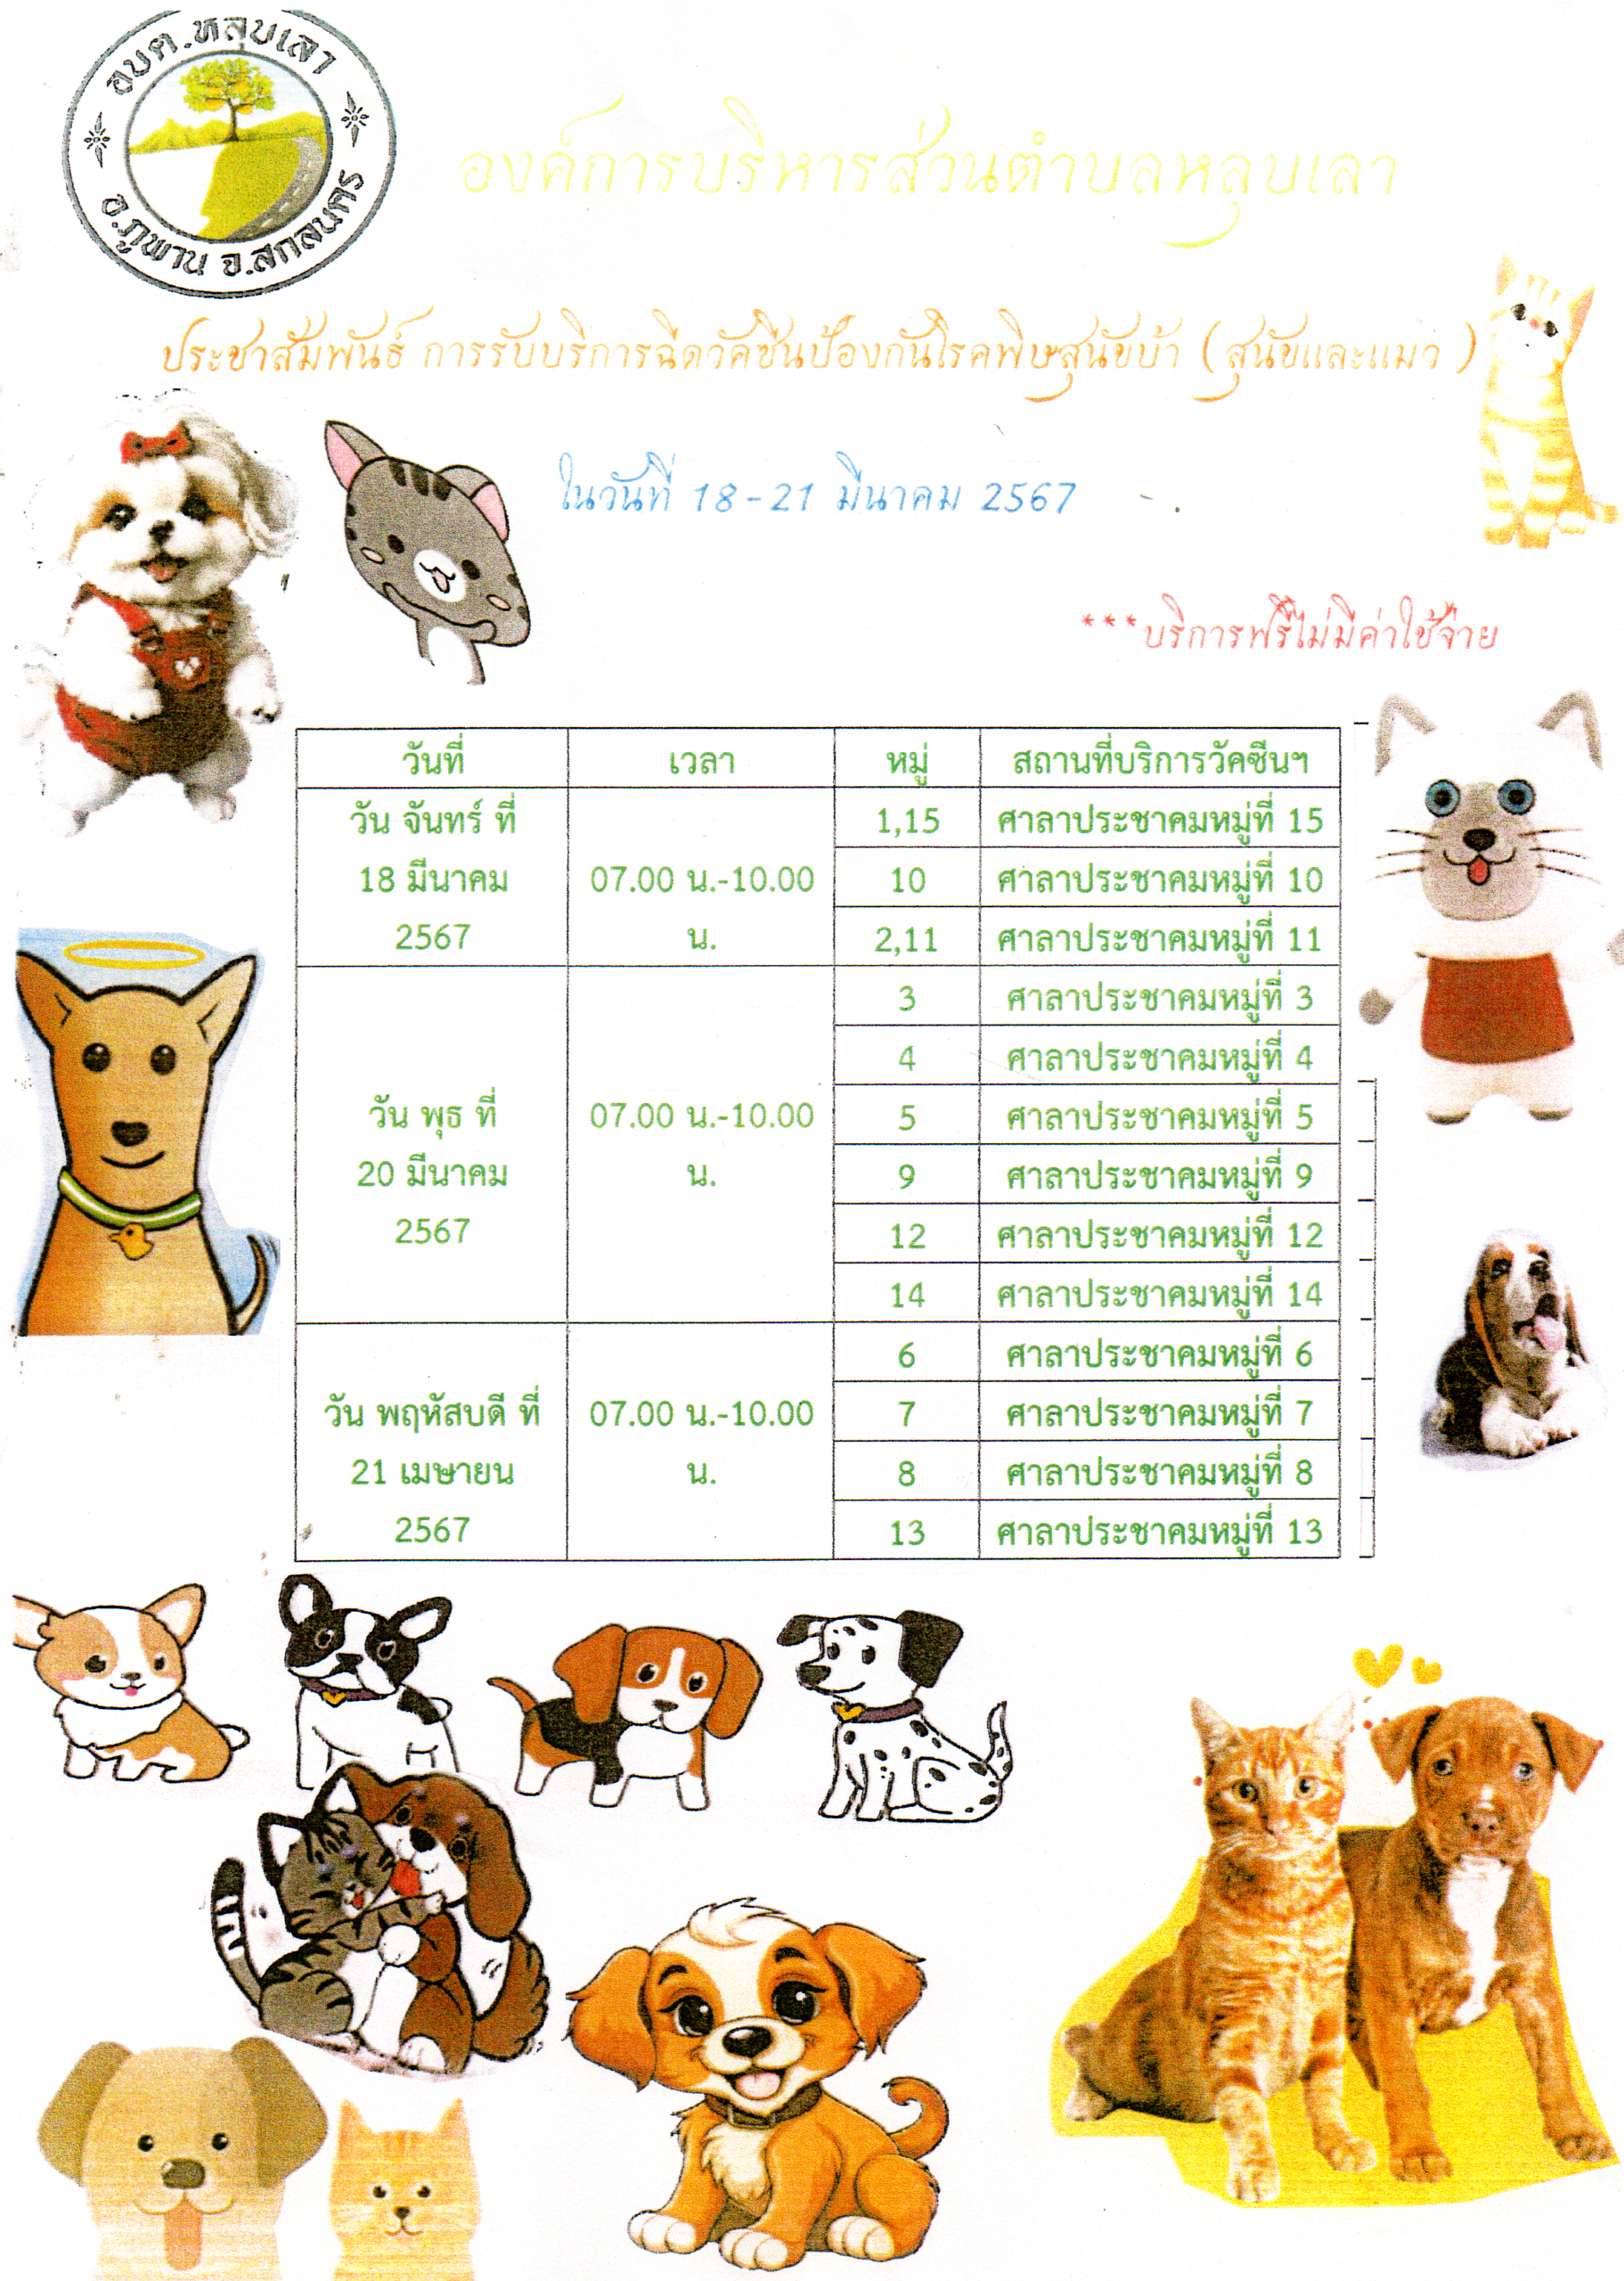 ประชาสัมพันธ์ การรับบริการฉีดวัคซีนป้องกันโรคพิษสุนัขบ้า (สุนัขและแมว) ในวันที่ 18-21 มีนาคม 2567